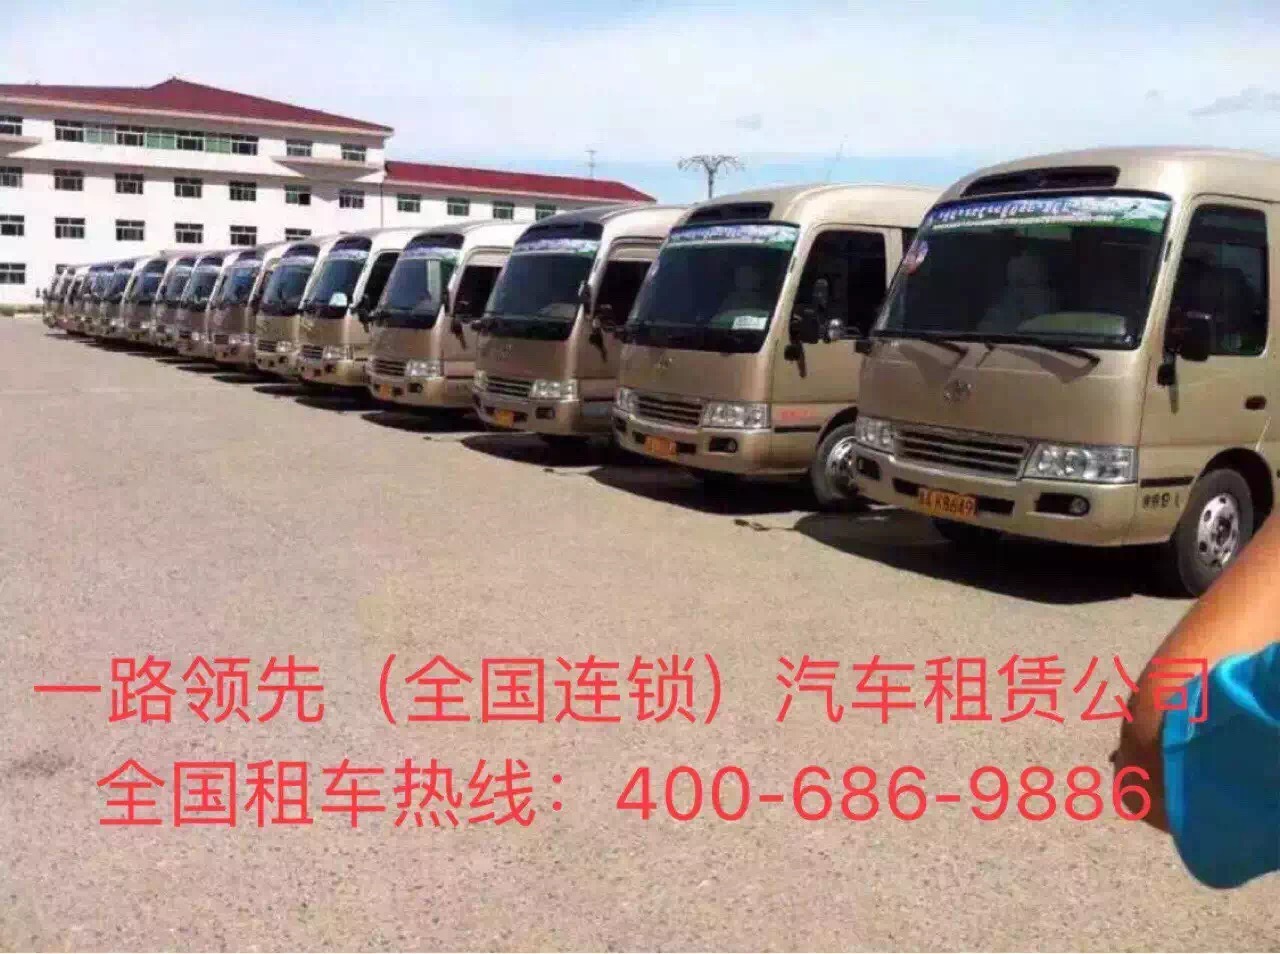 北京商務租車